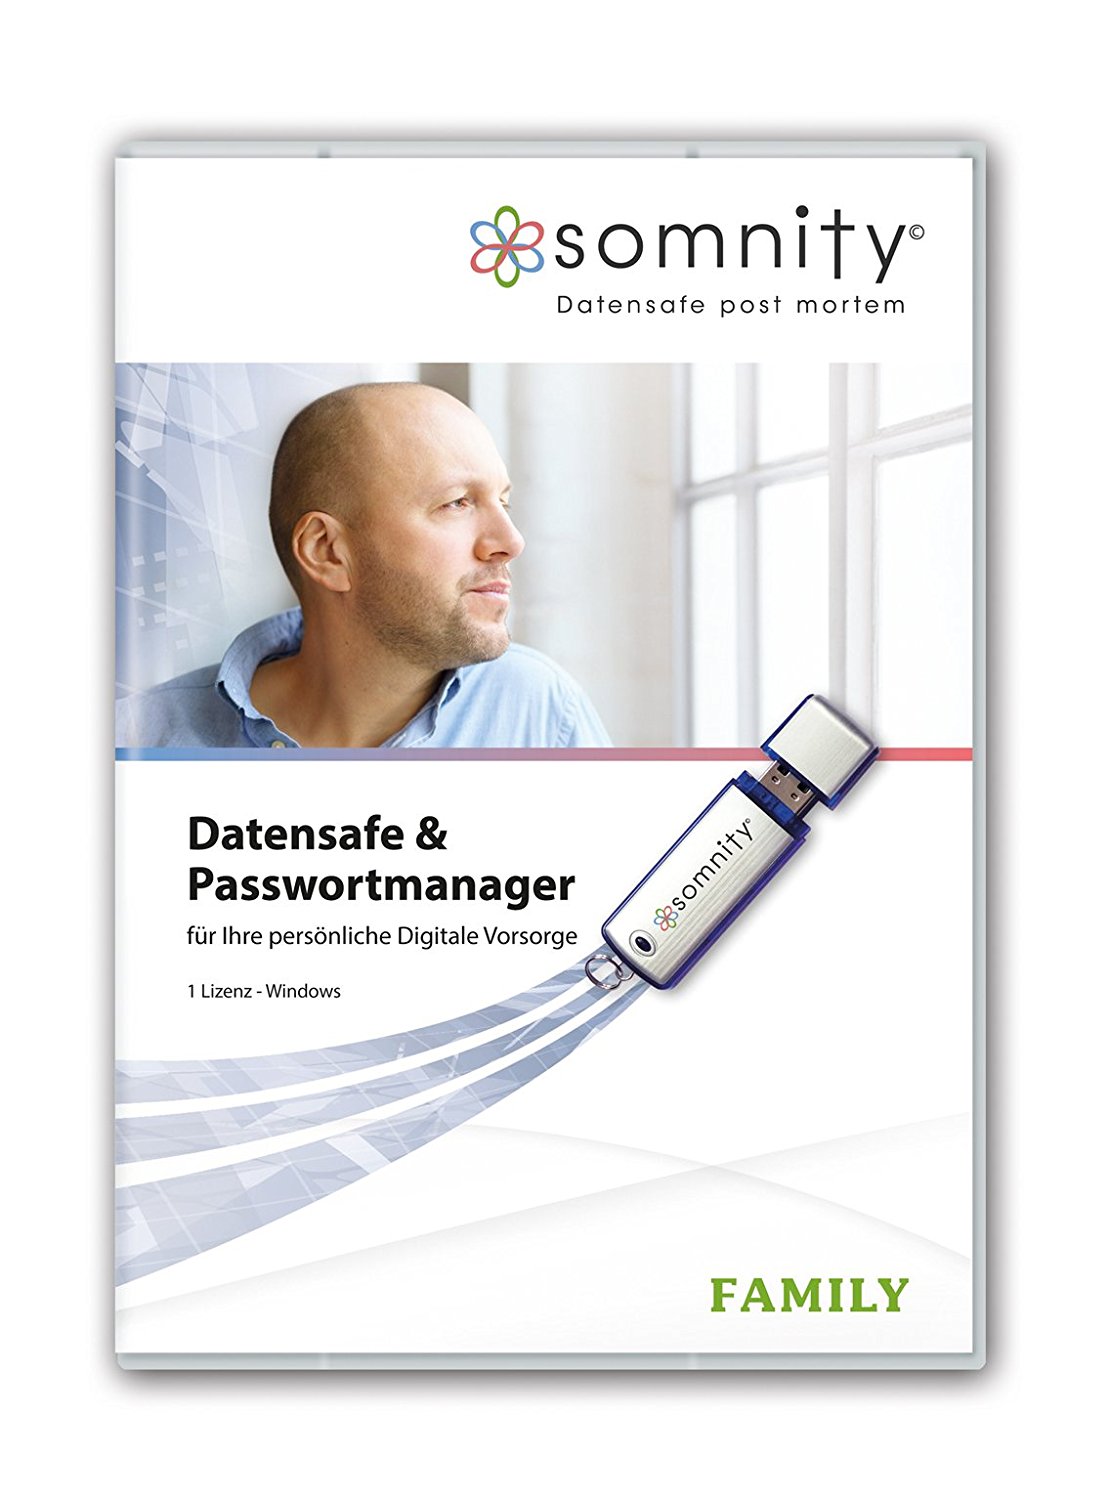 SOMNITY - Family Paket- das Rundum-Paket für Ihre persönliche Digitale Vorsorge unter Alltagshilfen Shop